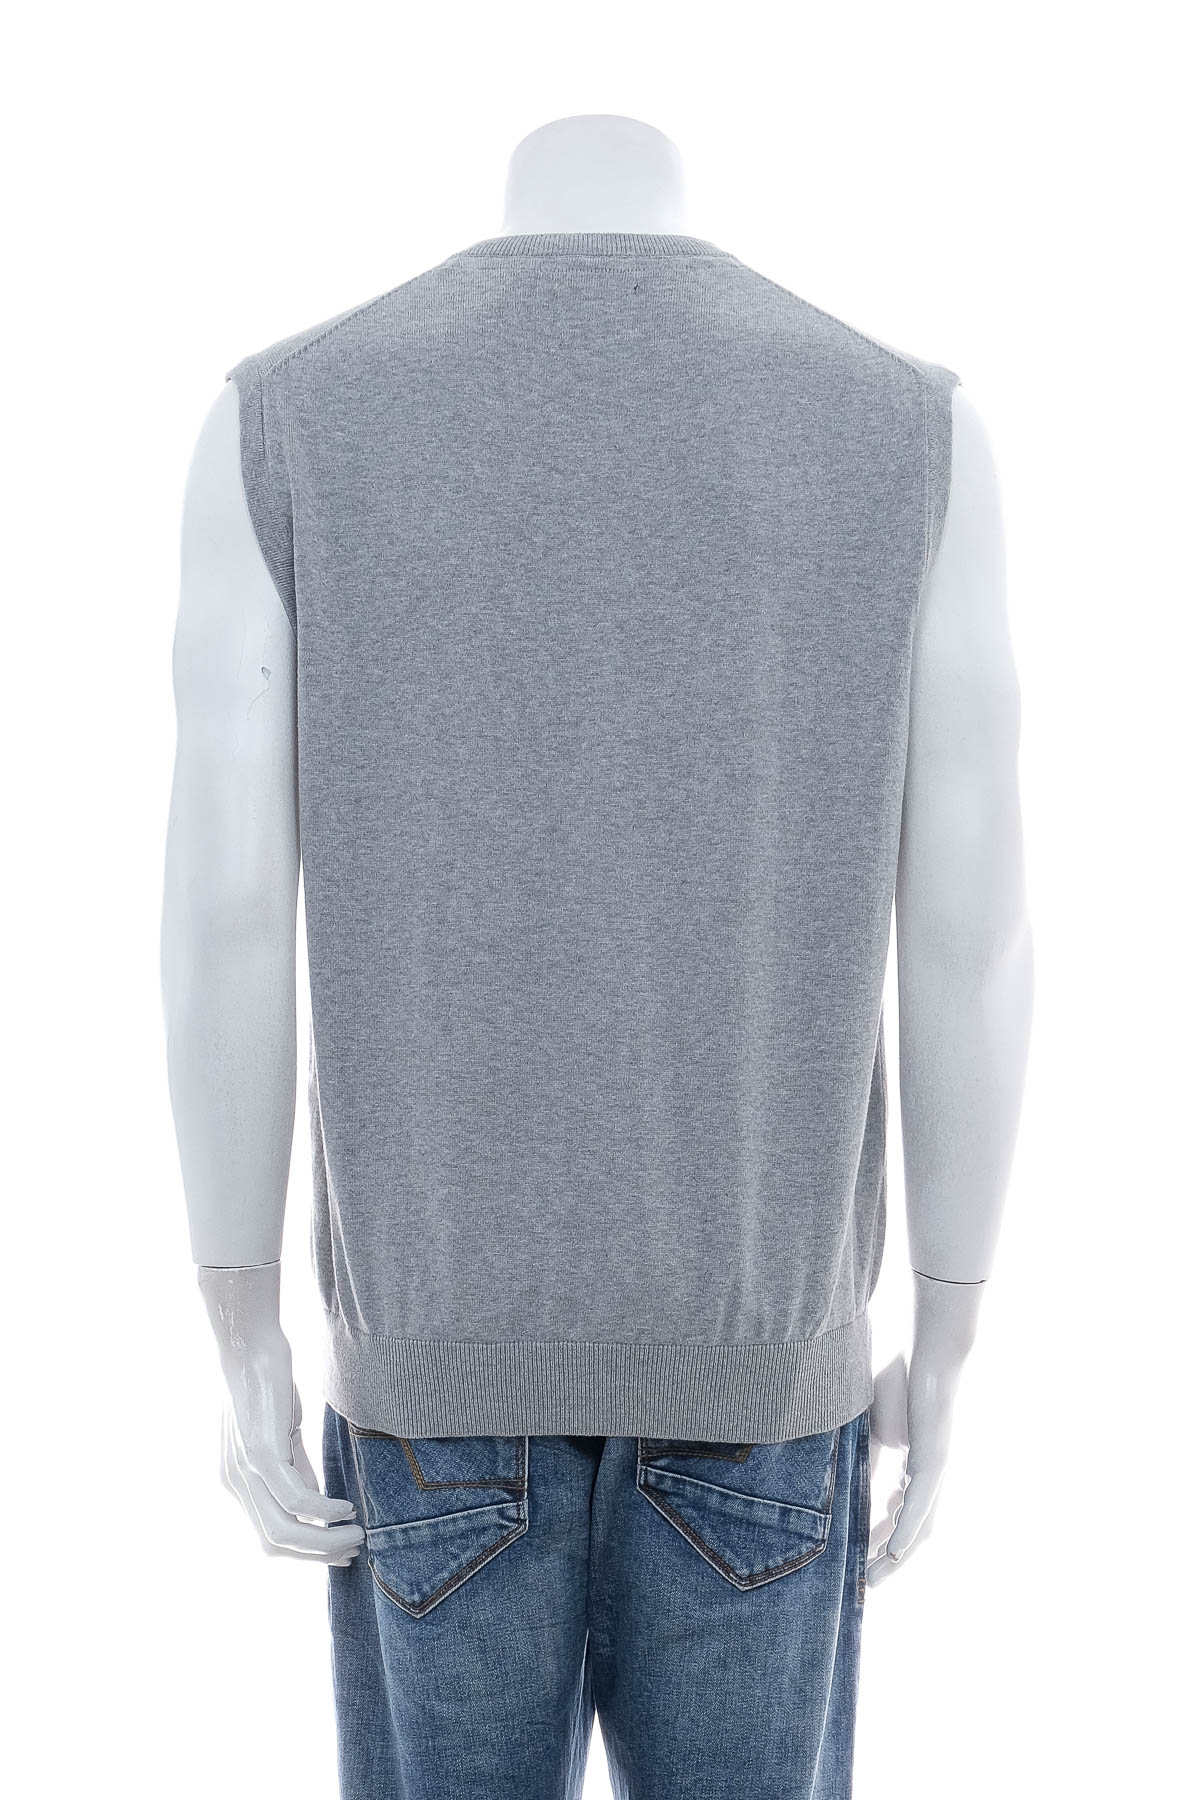 Men's sweater - JANVANDERSTORM - 1